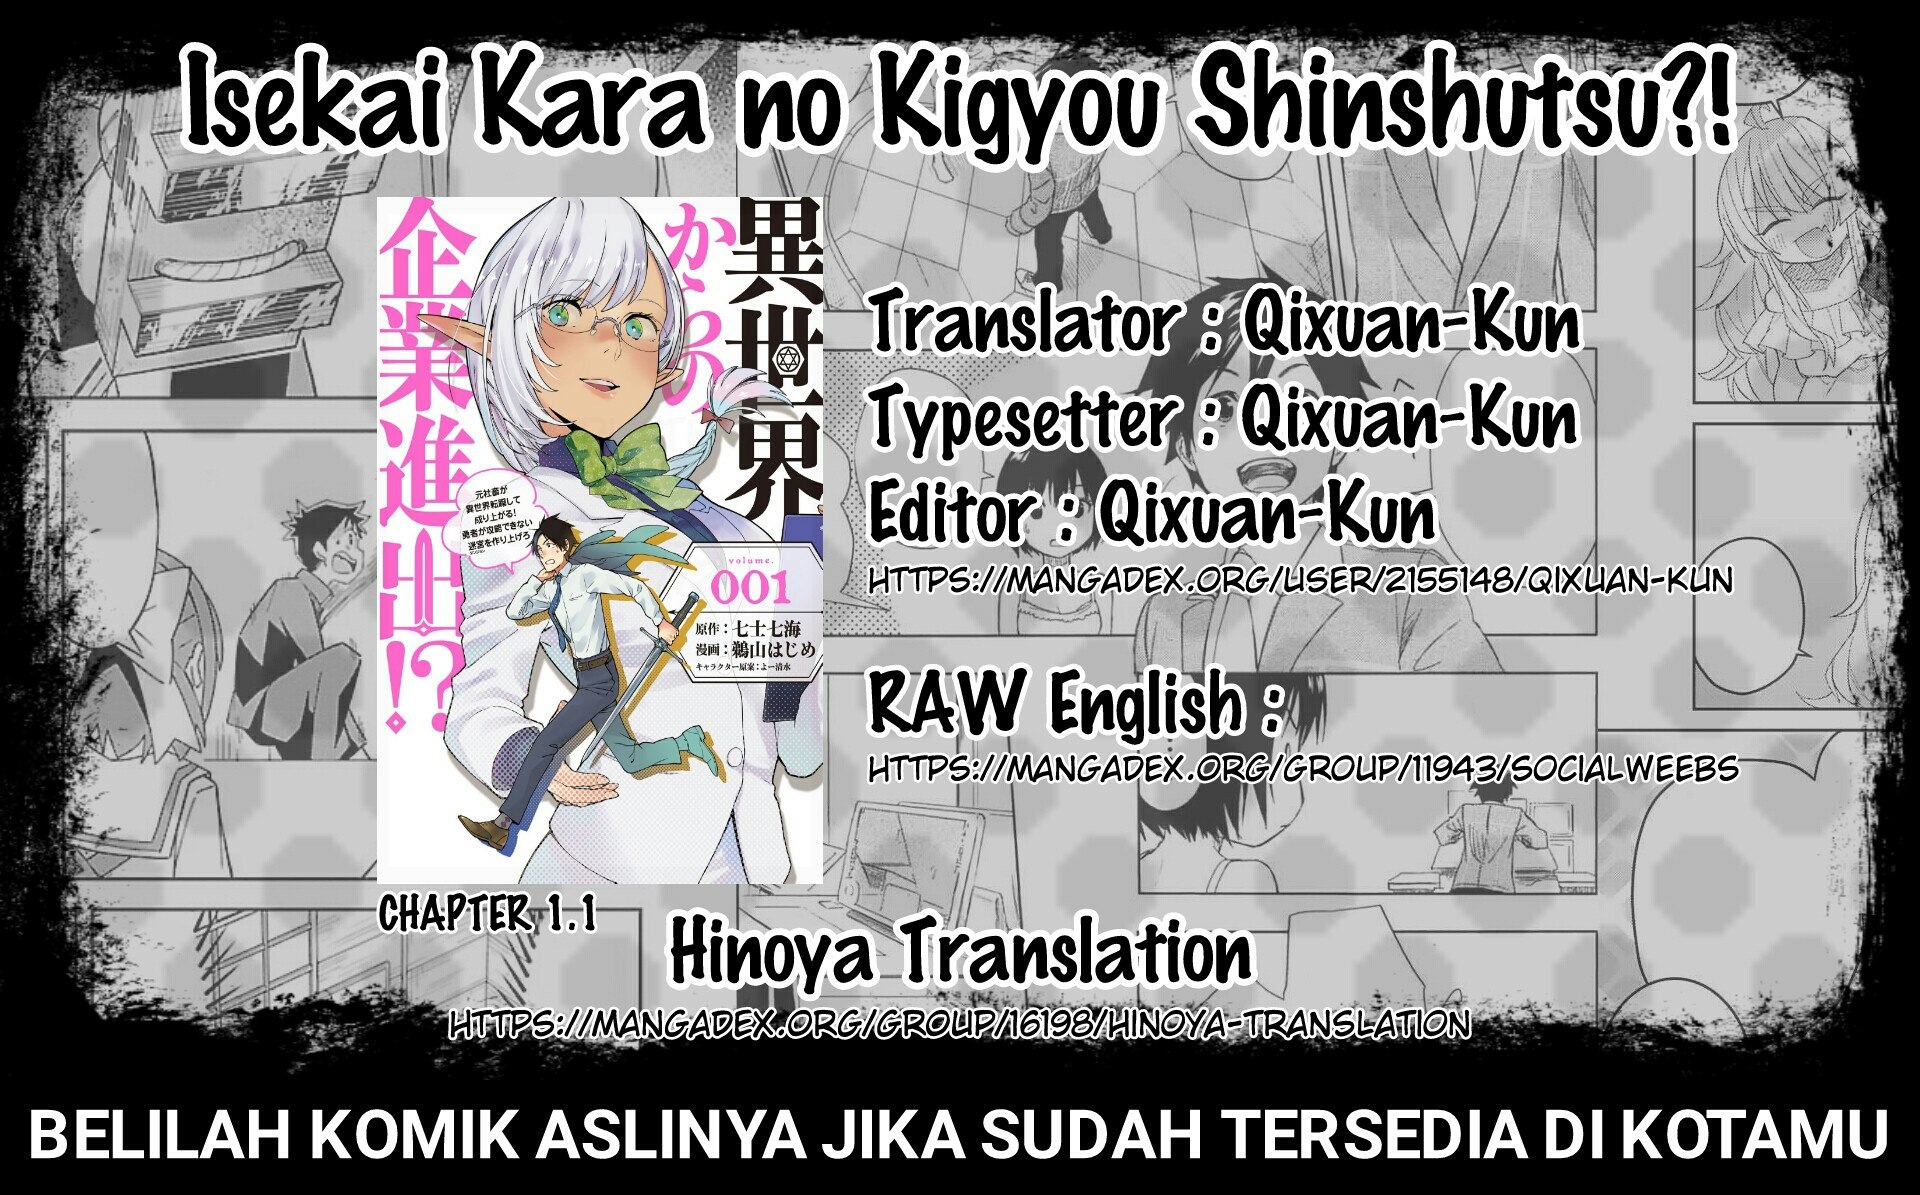 Isekai kara no Kigyou Shinshutsu?! Chapter 1.1